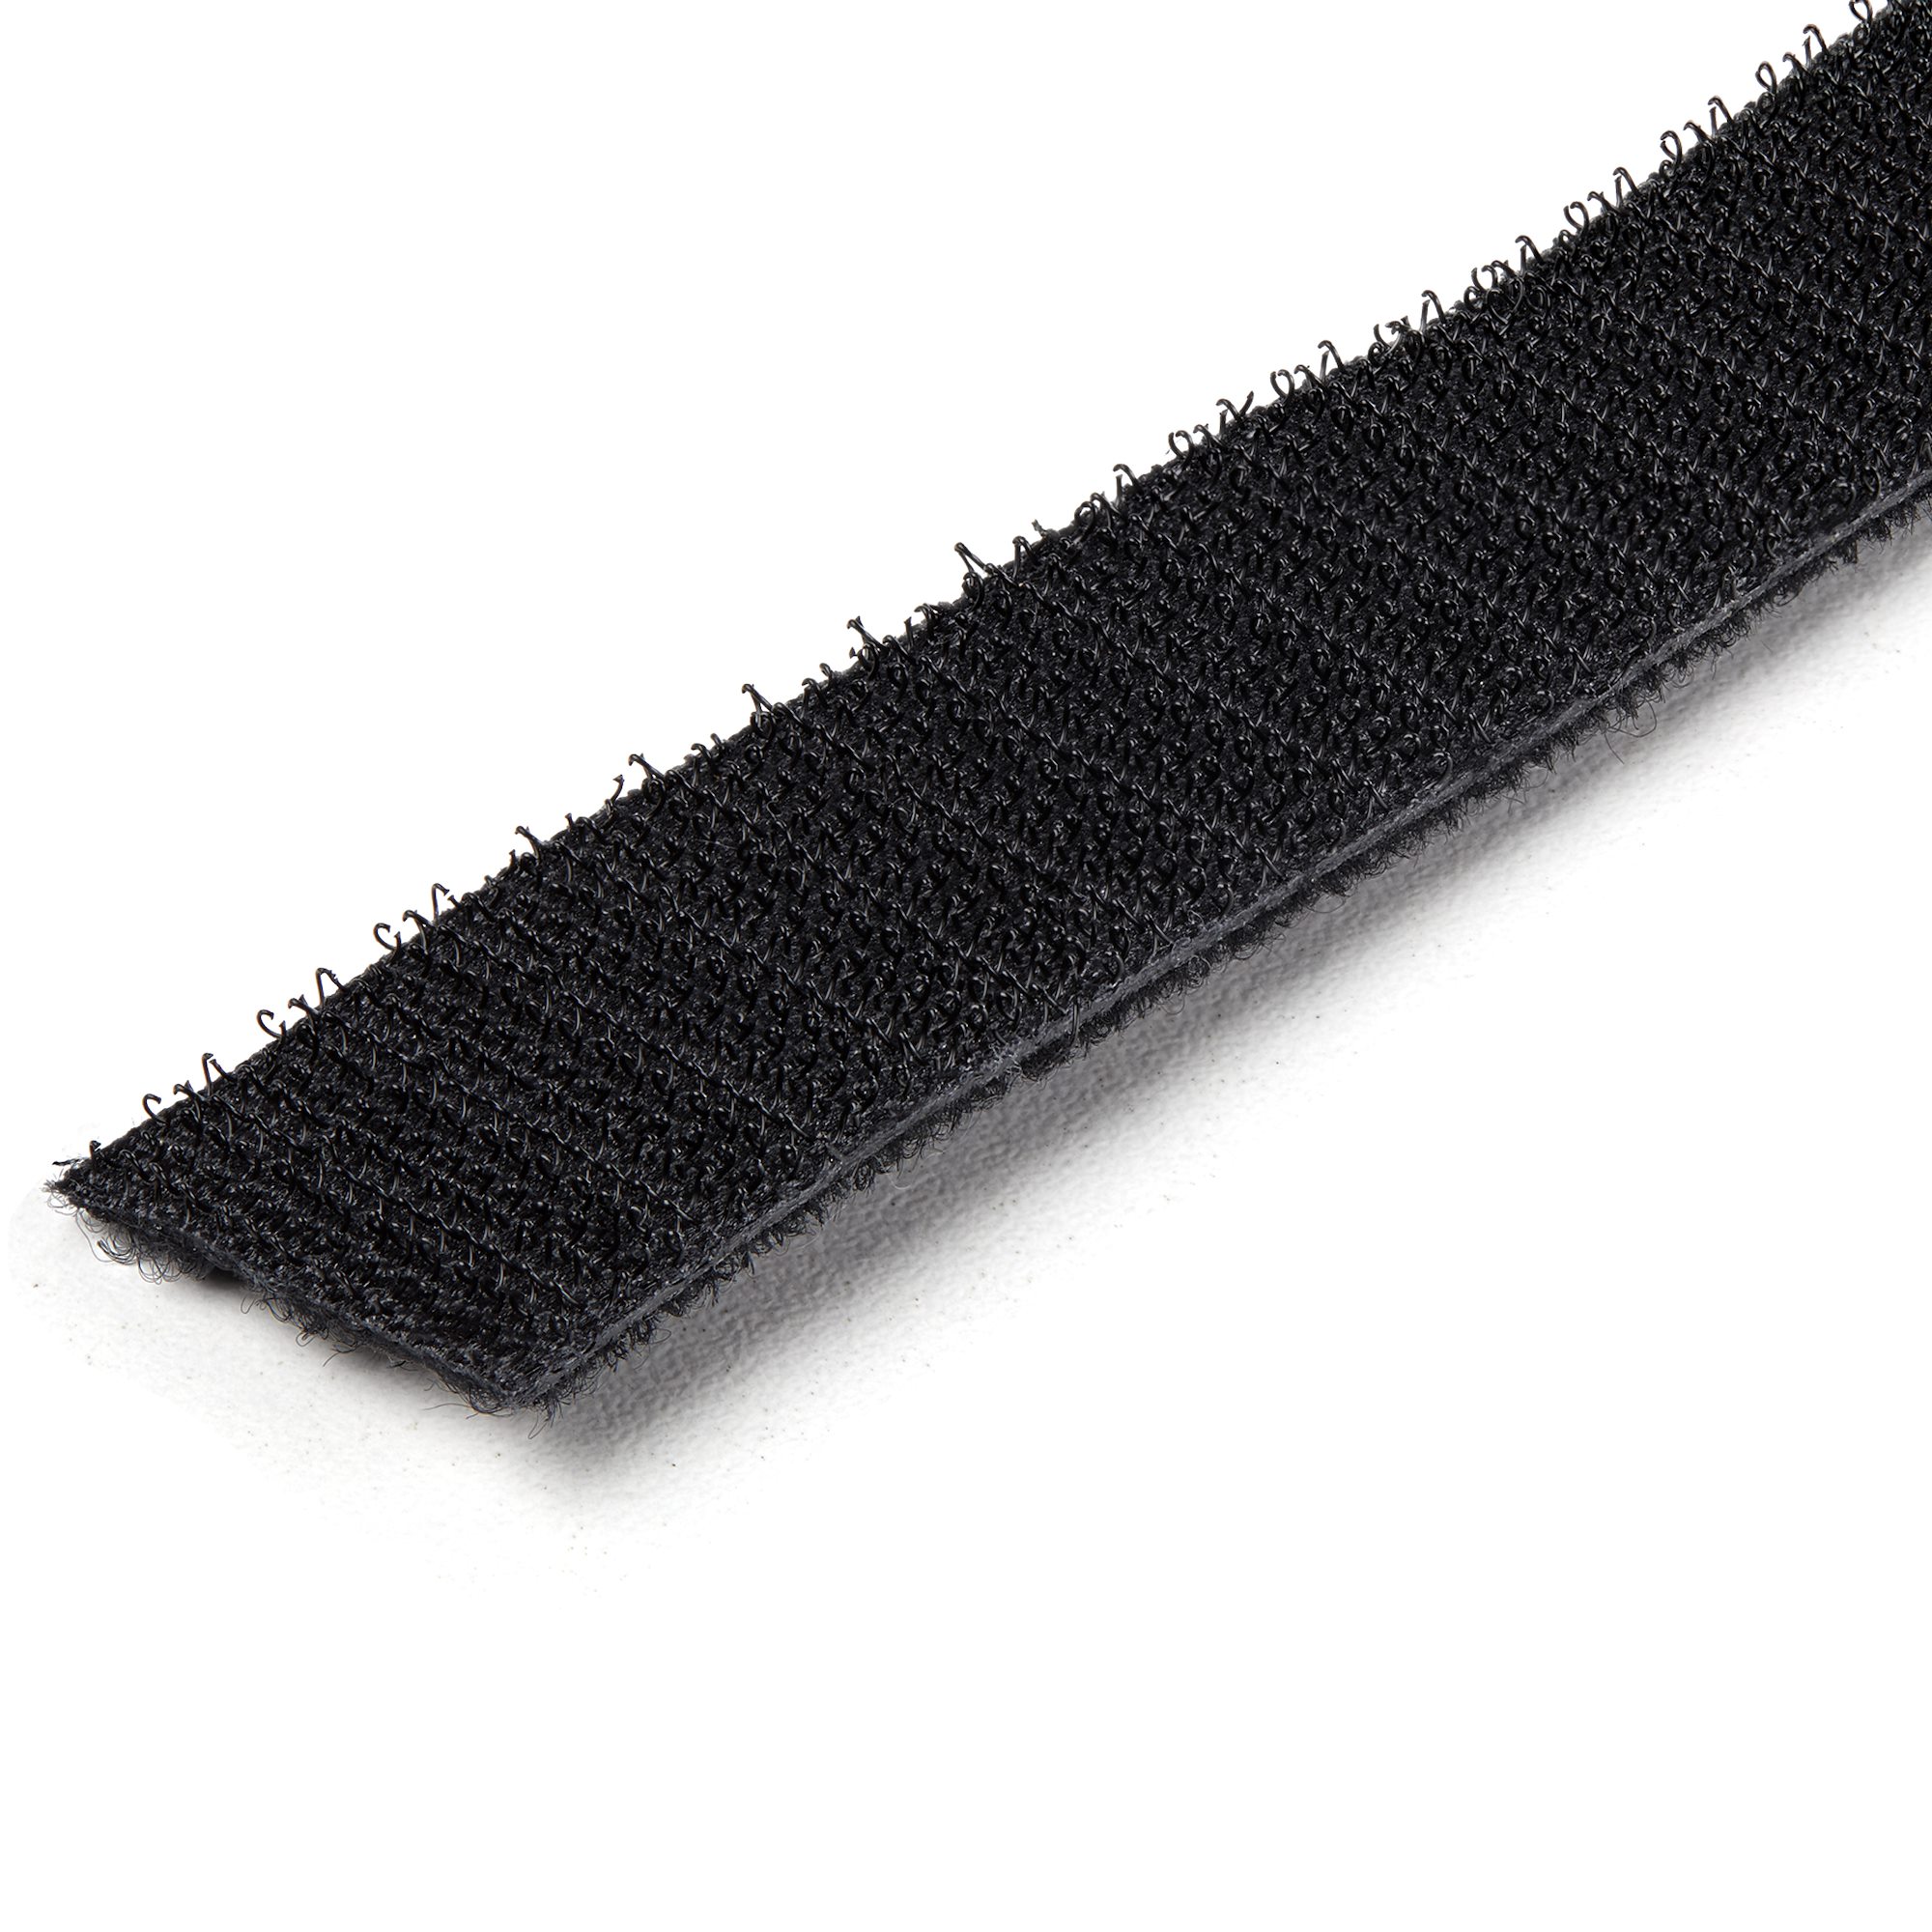 Bridas Velcro Startech HKLP100